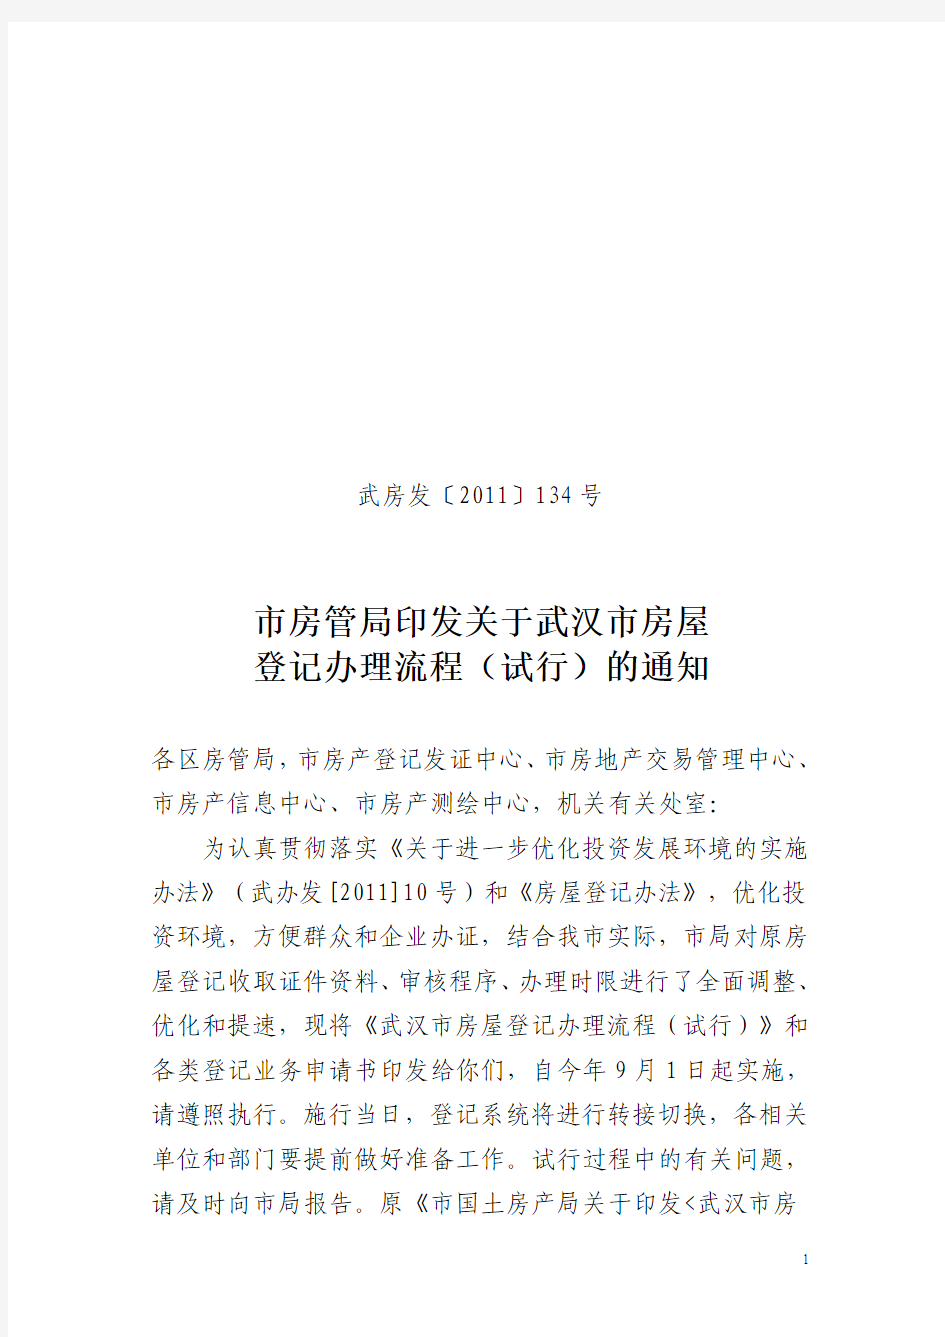 武汉市住房保障和房屋管理局2011年第134号文